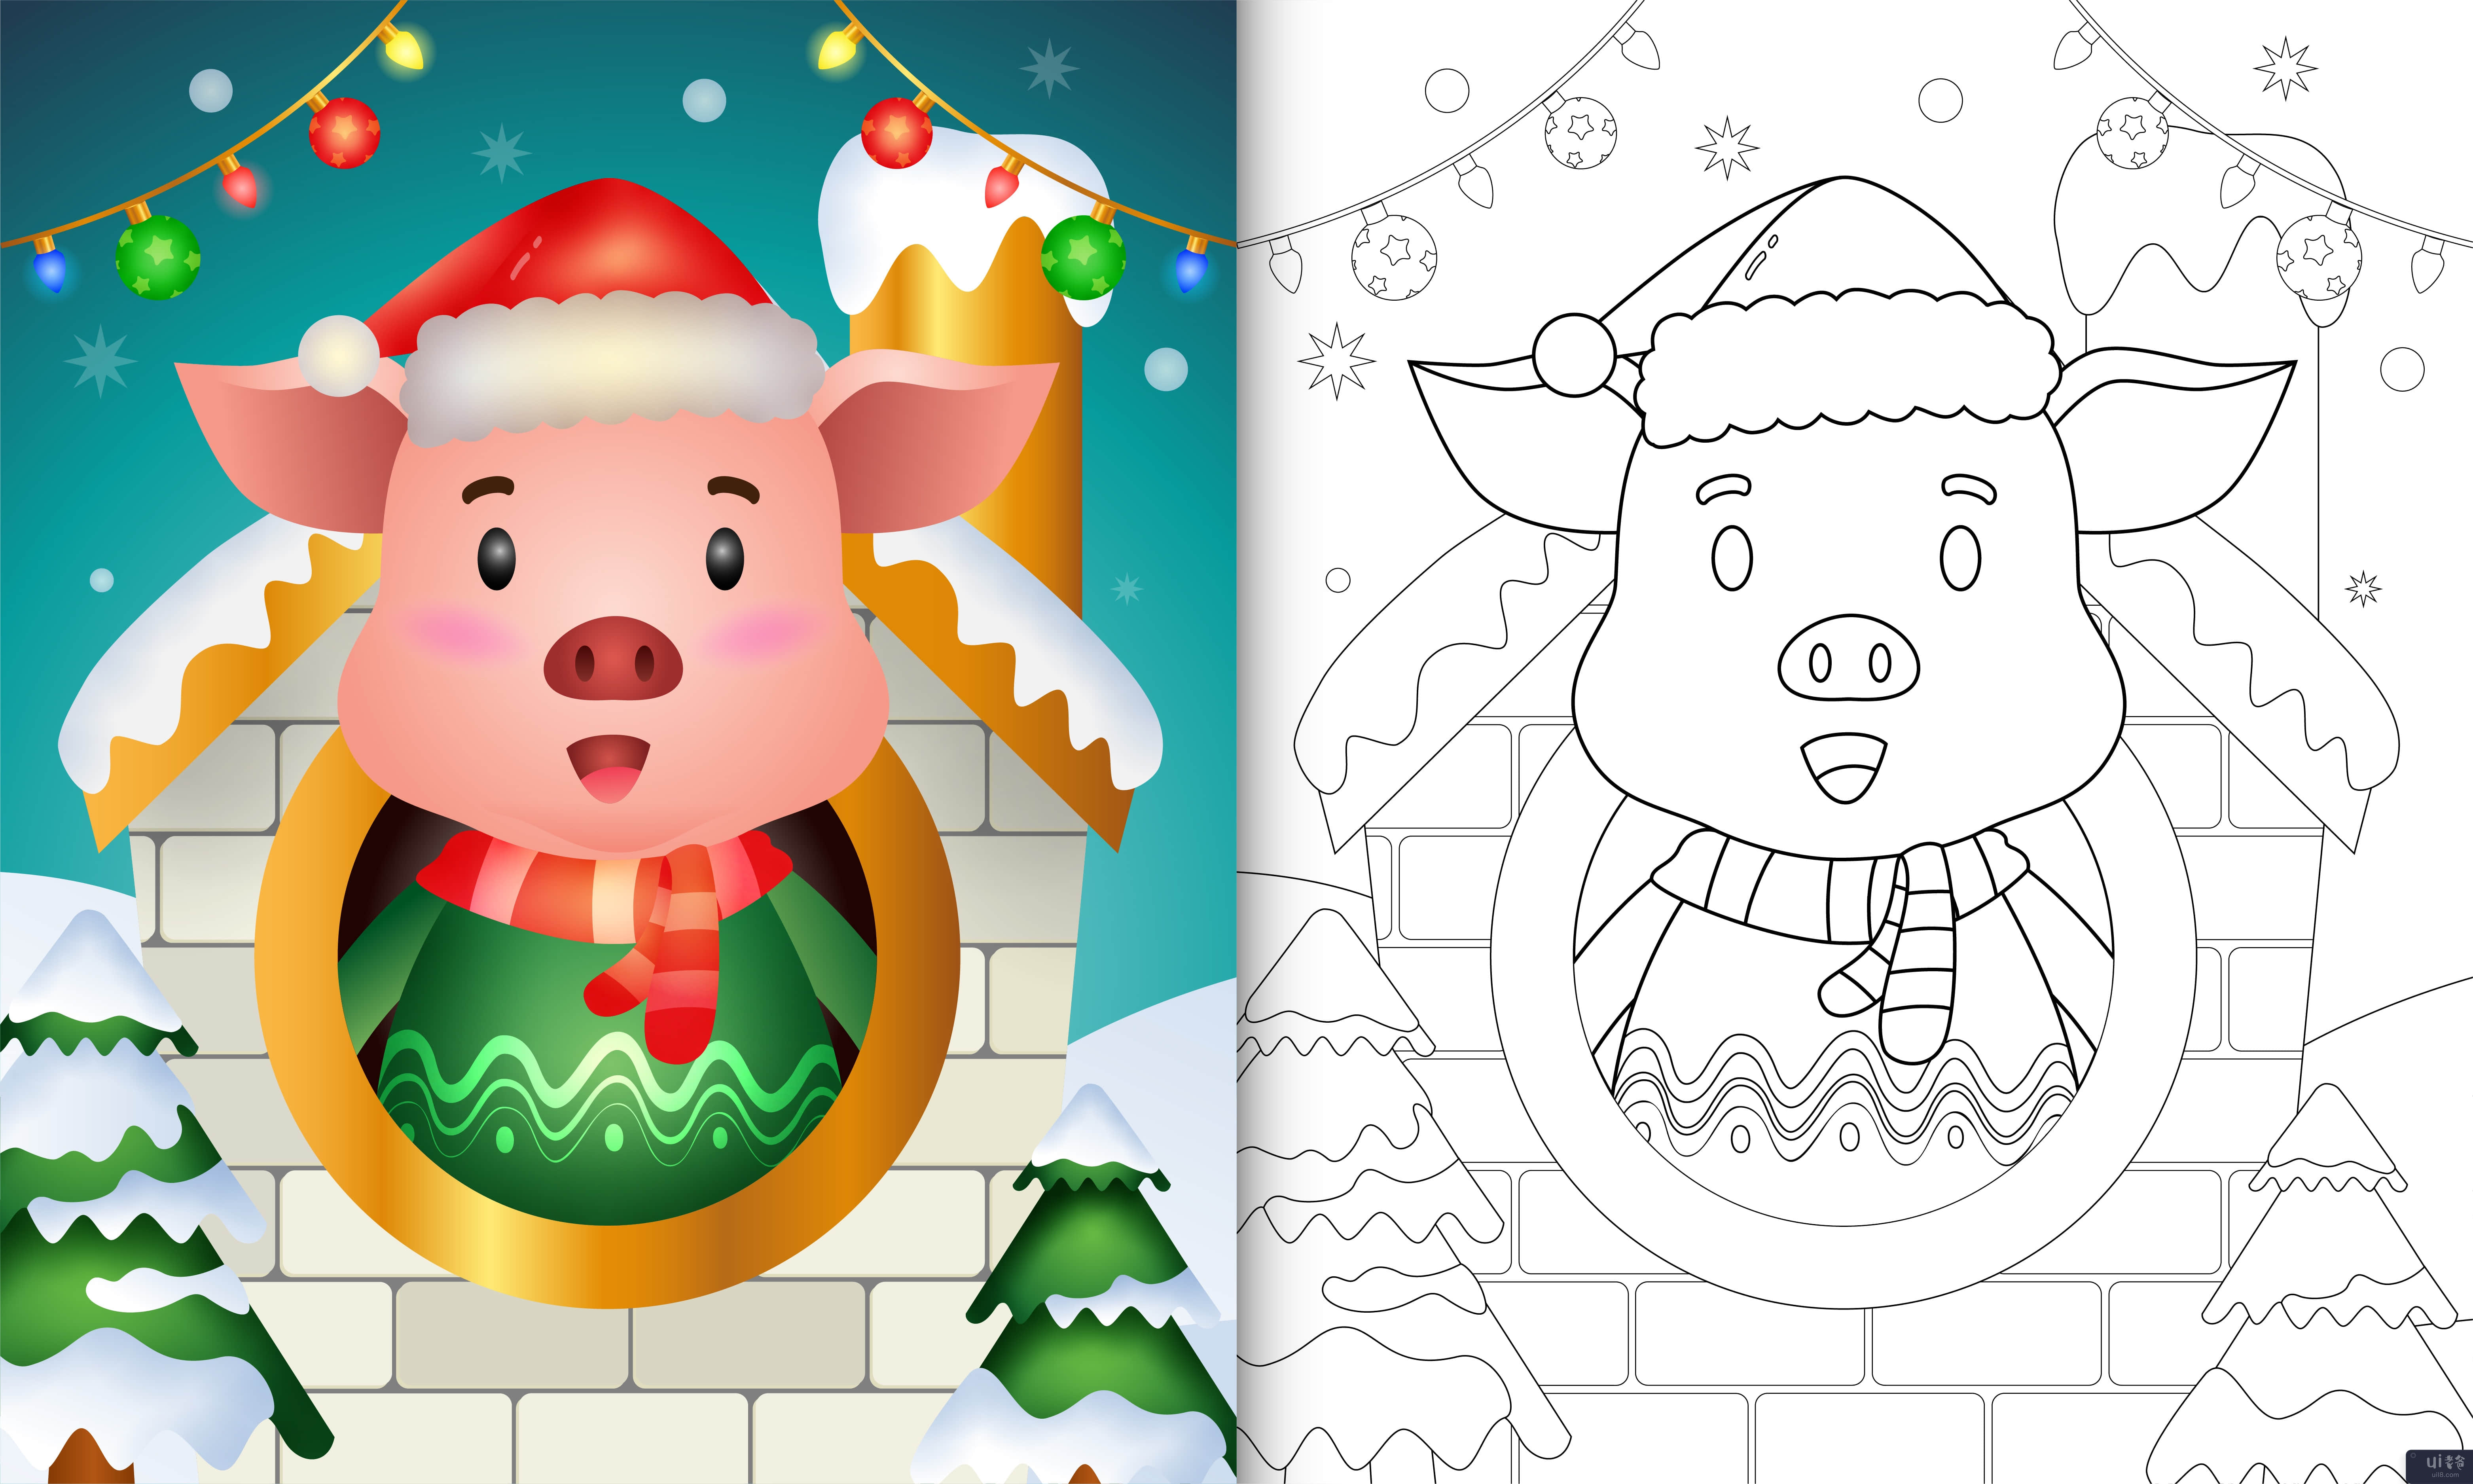 用圣诞帽和围巾为可爱的猪圣诞人物着色书(coloring book with a cute pig christmas characters using santa hat and scarf)插图2